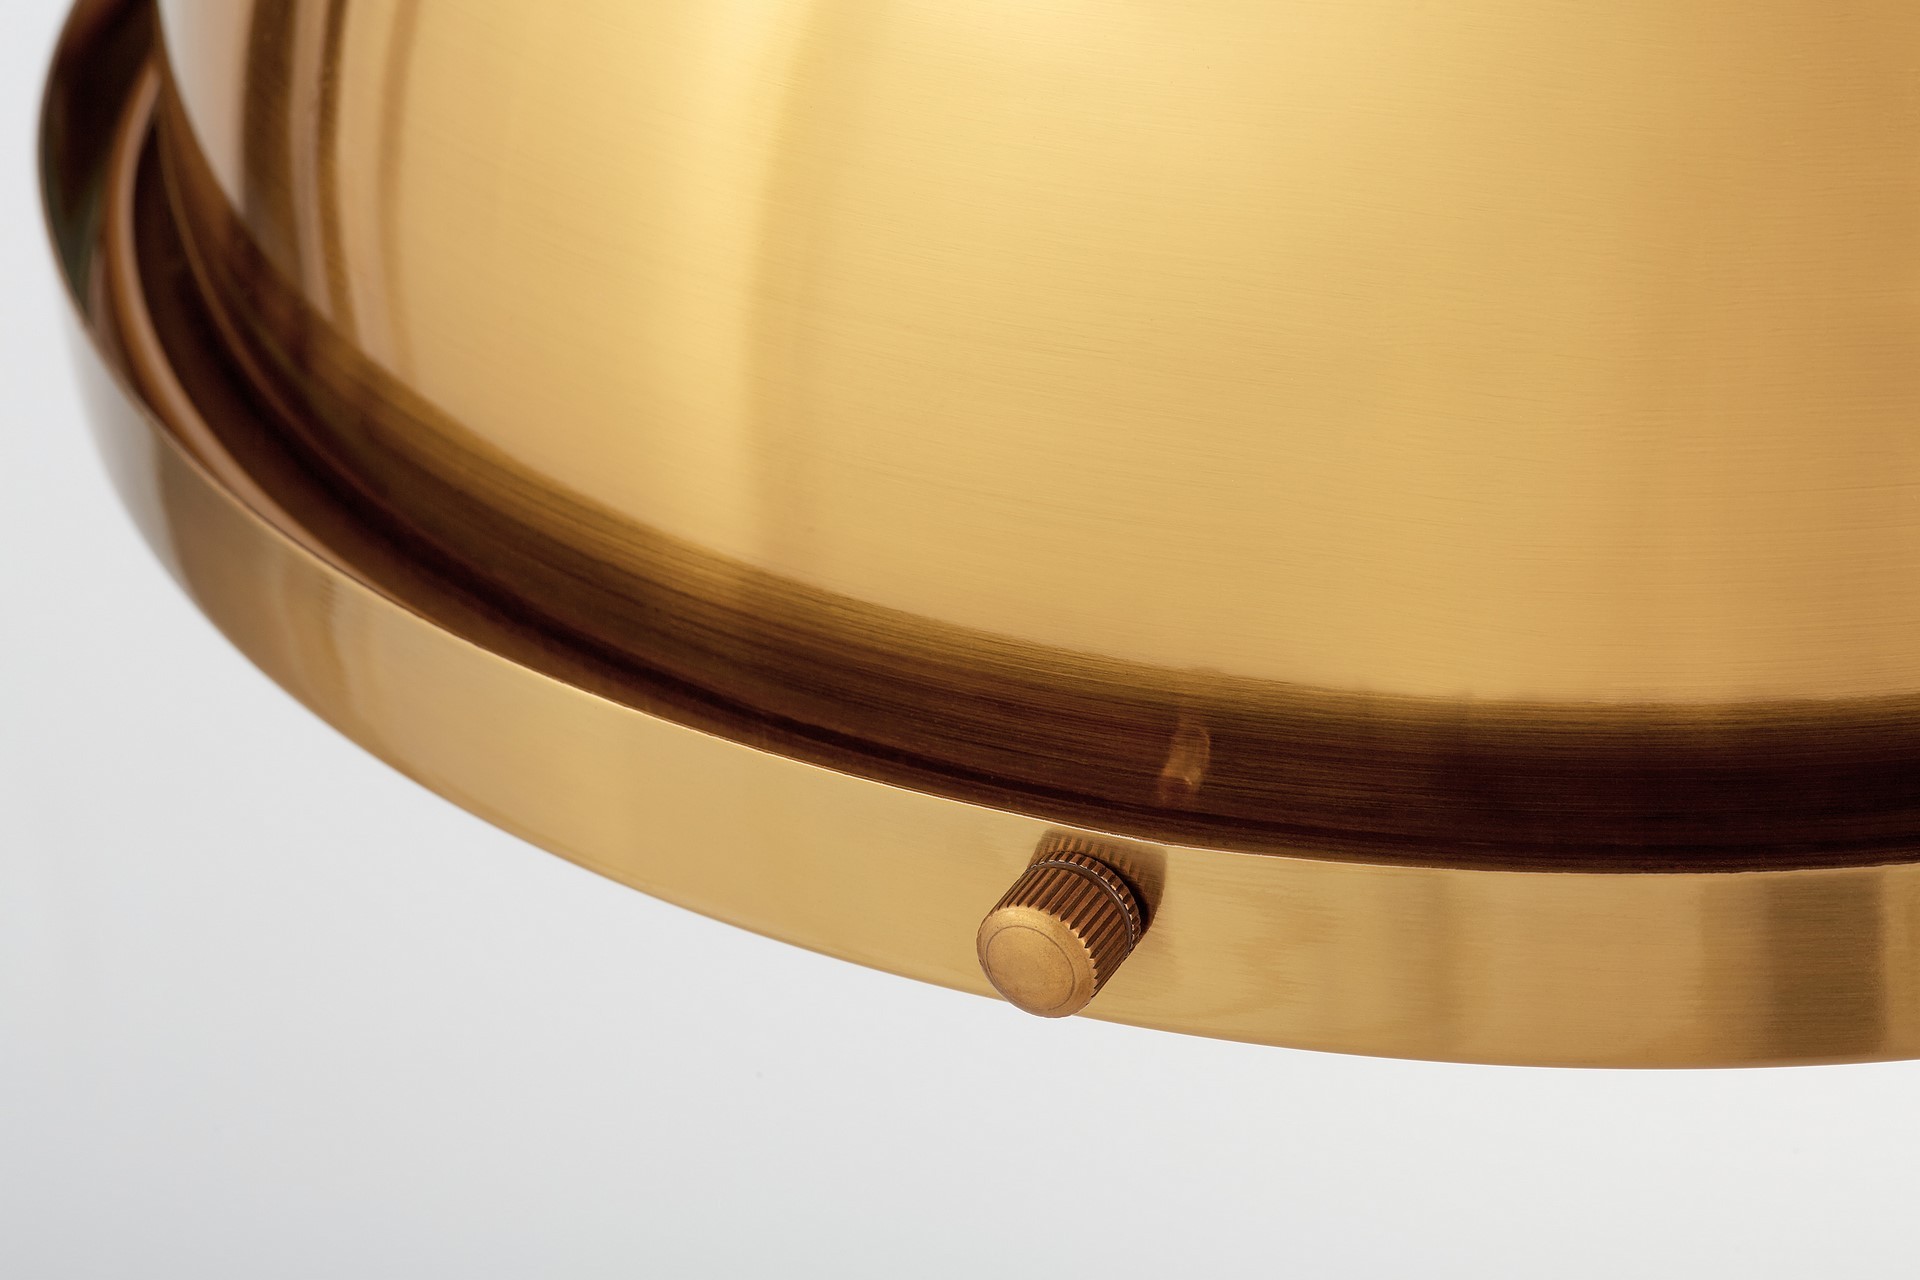 Industrialna lampa wisząca ETTORE kolor mosiądzu, metalowa kopuła - Lumina Deco zdjęcie 4